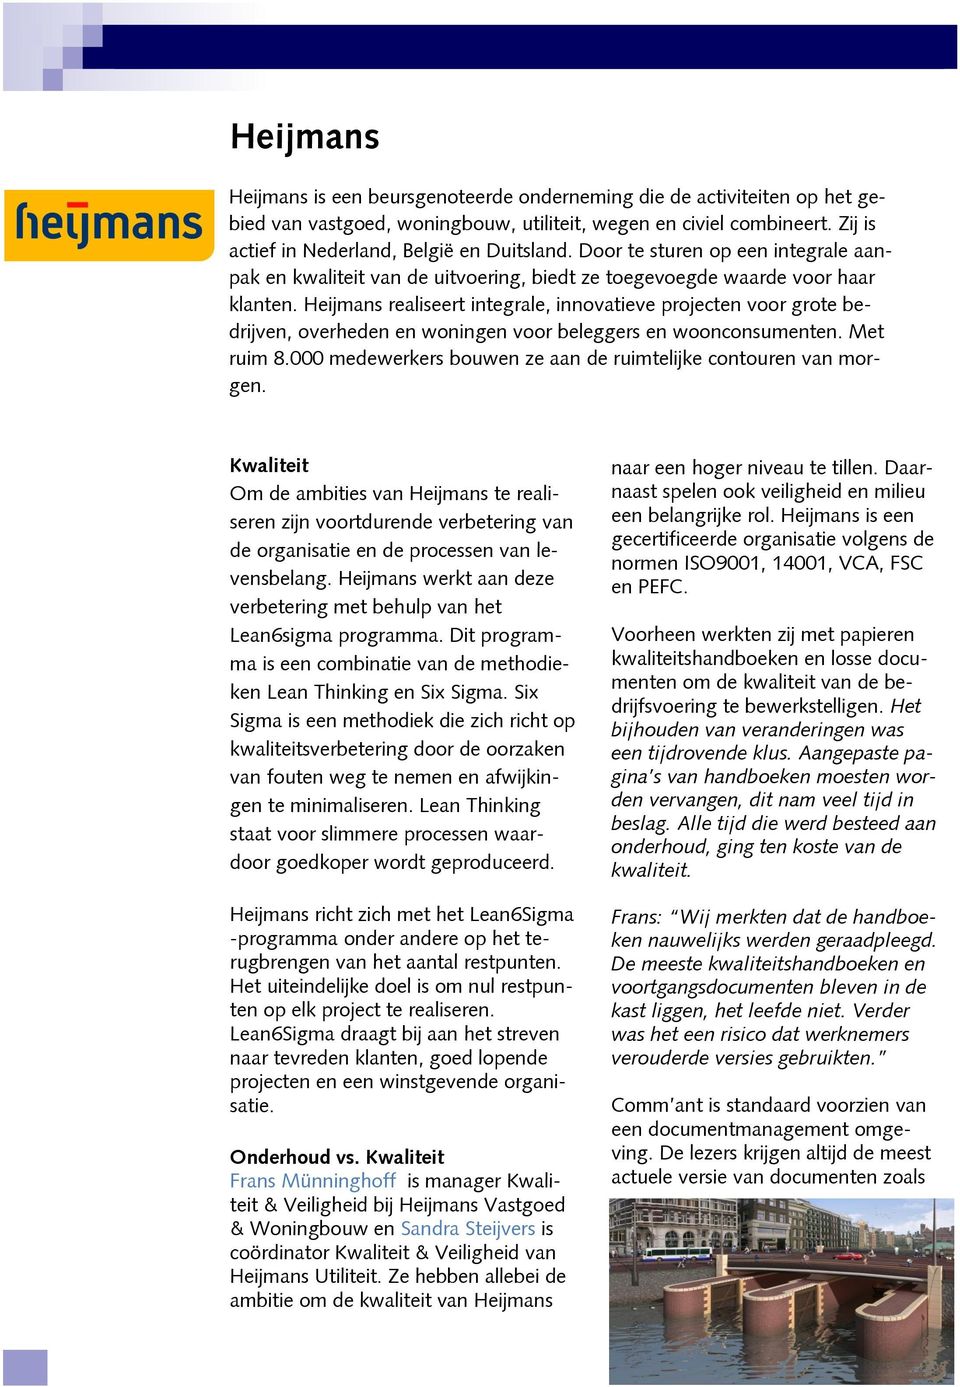 Heijmans realiseert integrale, innovatieve projecten voor grote bedrijven, overheden en woningen voor beleggers en woonconsumenten. Met ruim 8.